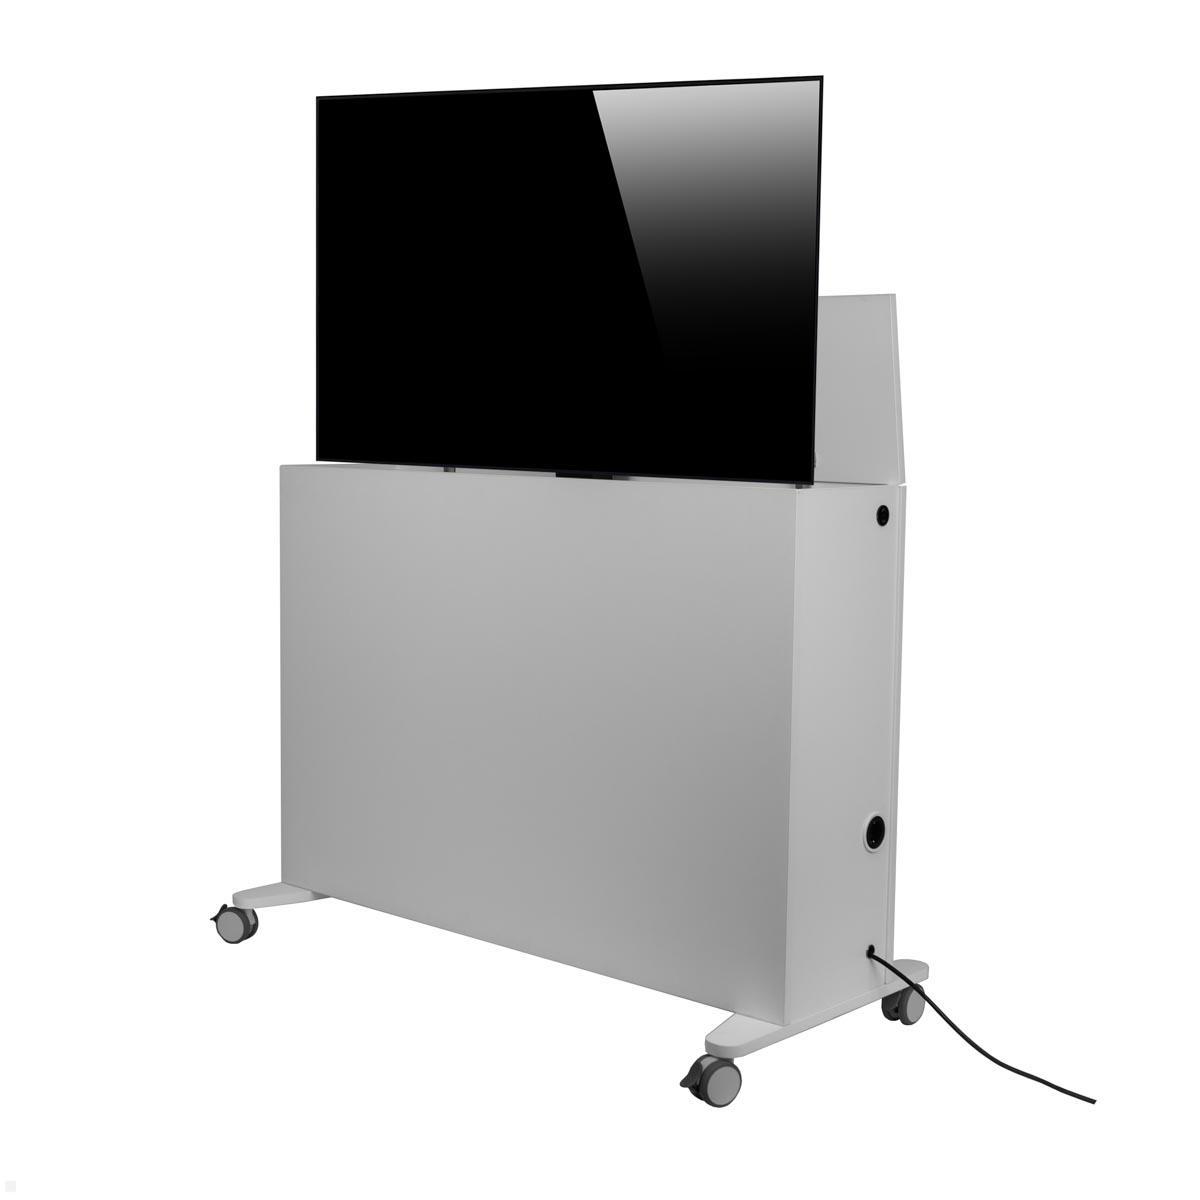 MonLines SIDEB55G mobiles TV Sideboard mit Lift bis 55 Zoll, grau von MonLines